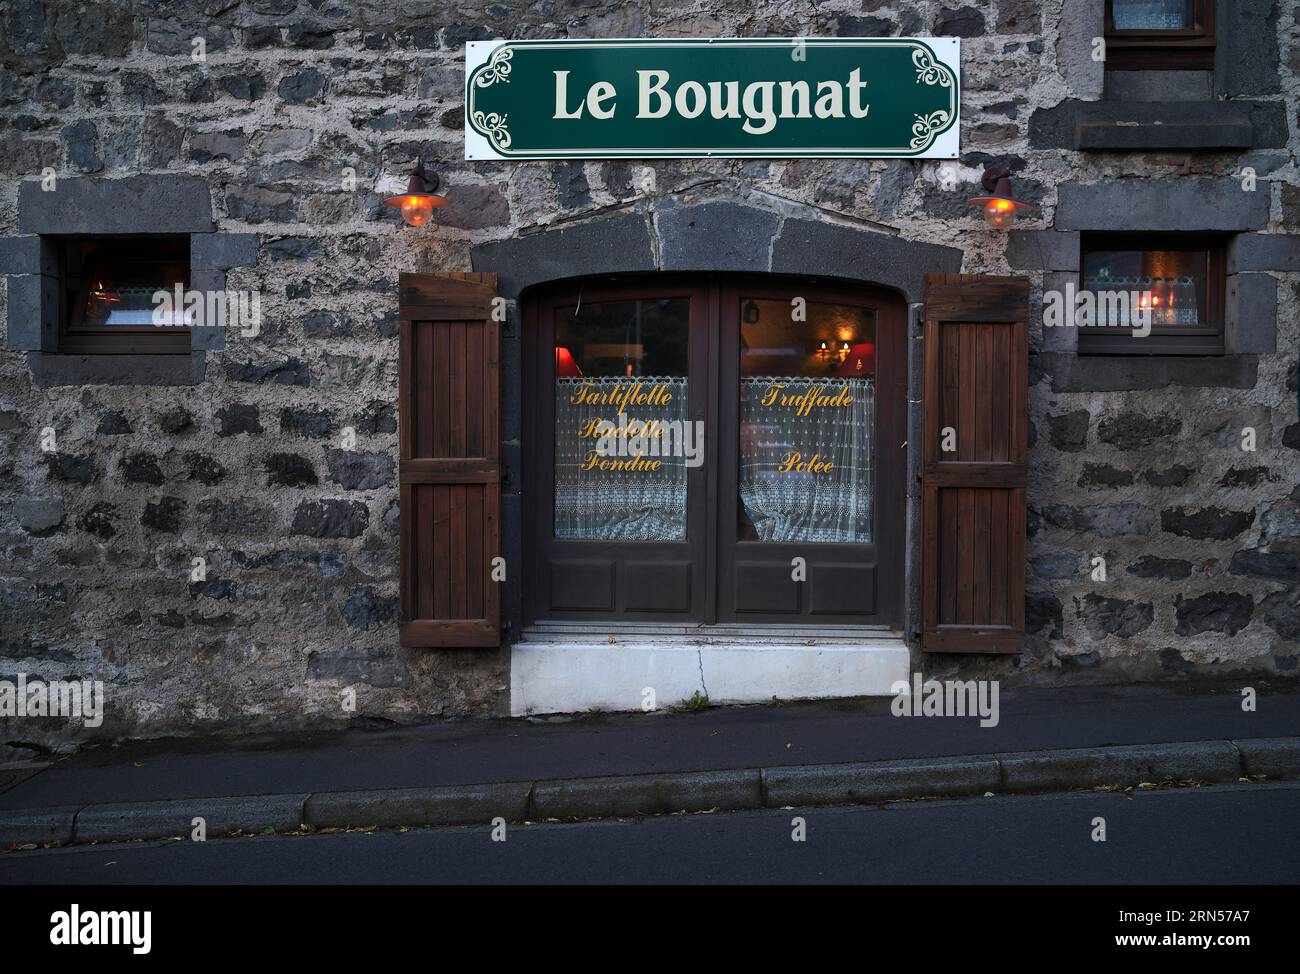 Restaurant Le Bougnat with regional specialities, Mont-Dore, Departement Puy-de-Dome, Region Auvergne-Rhone-Alpes, France Stock Photo